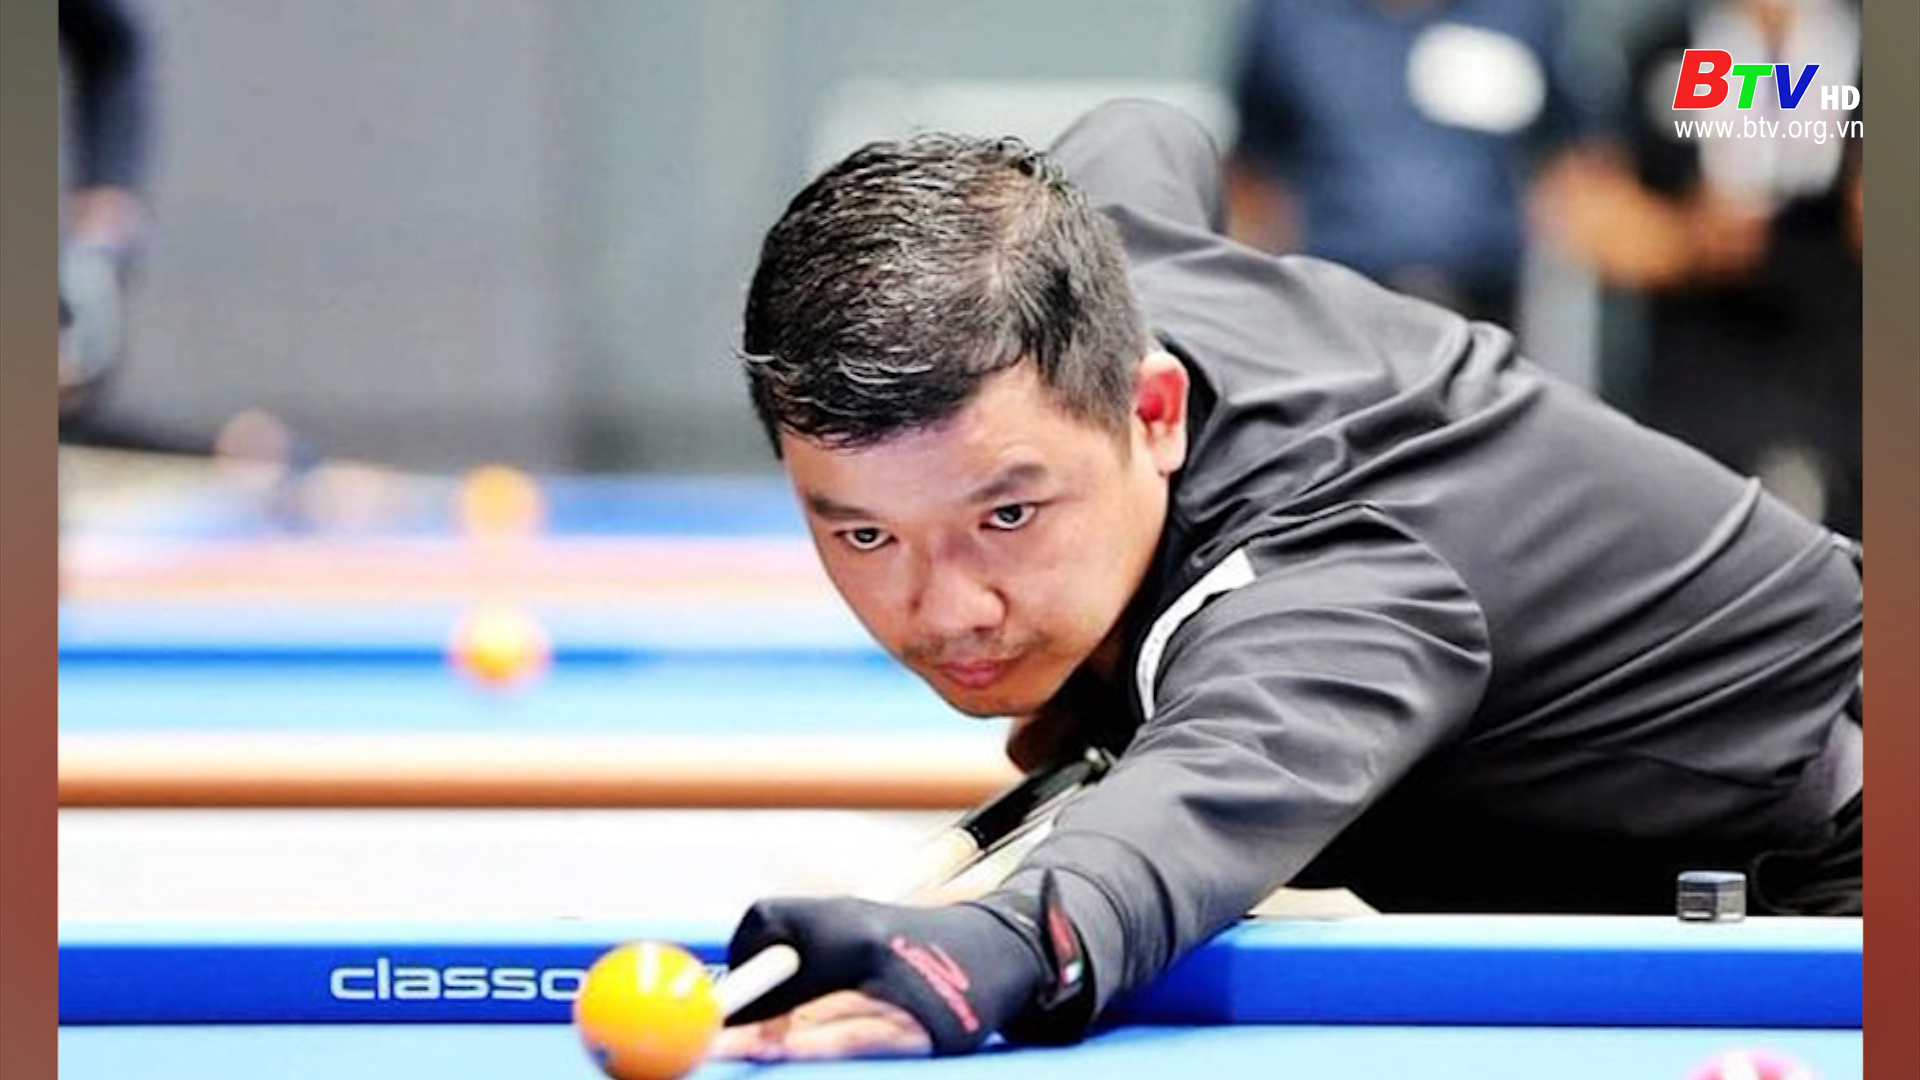 Nguyễn Đức Anh Chiến gia nhập Billiards PBA Hàn Quốc